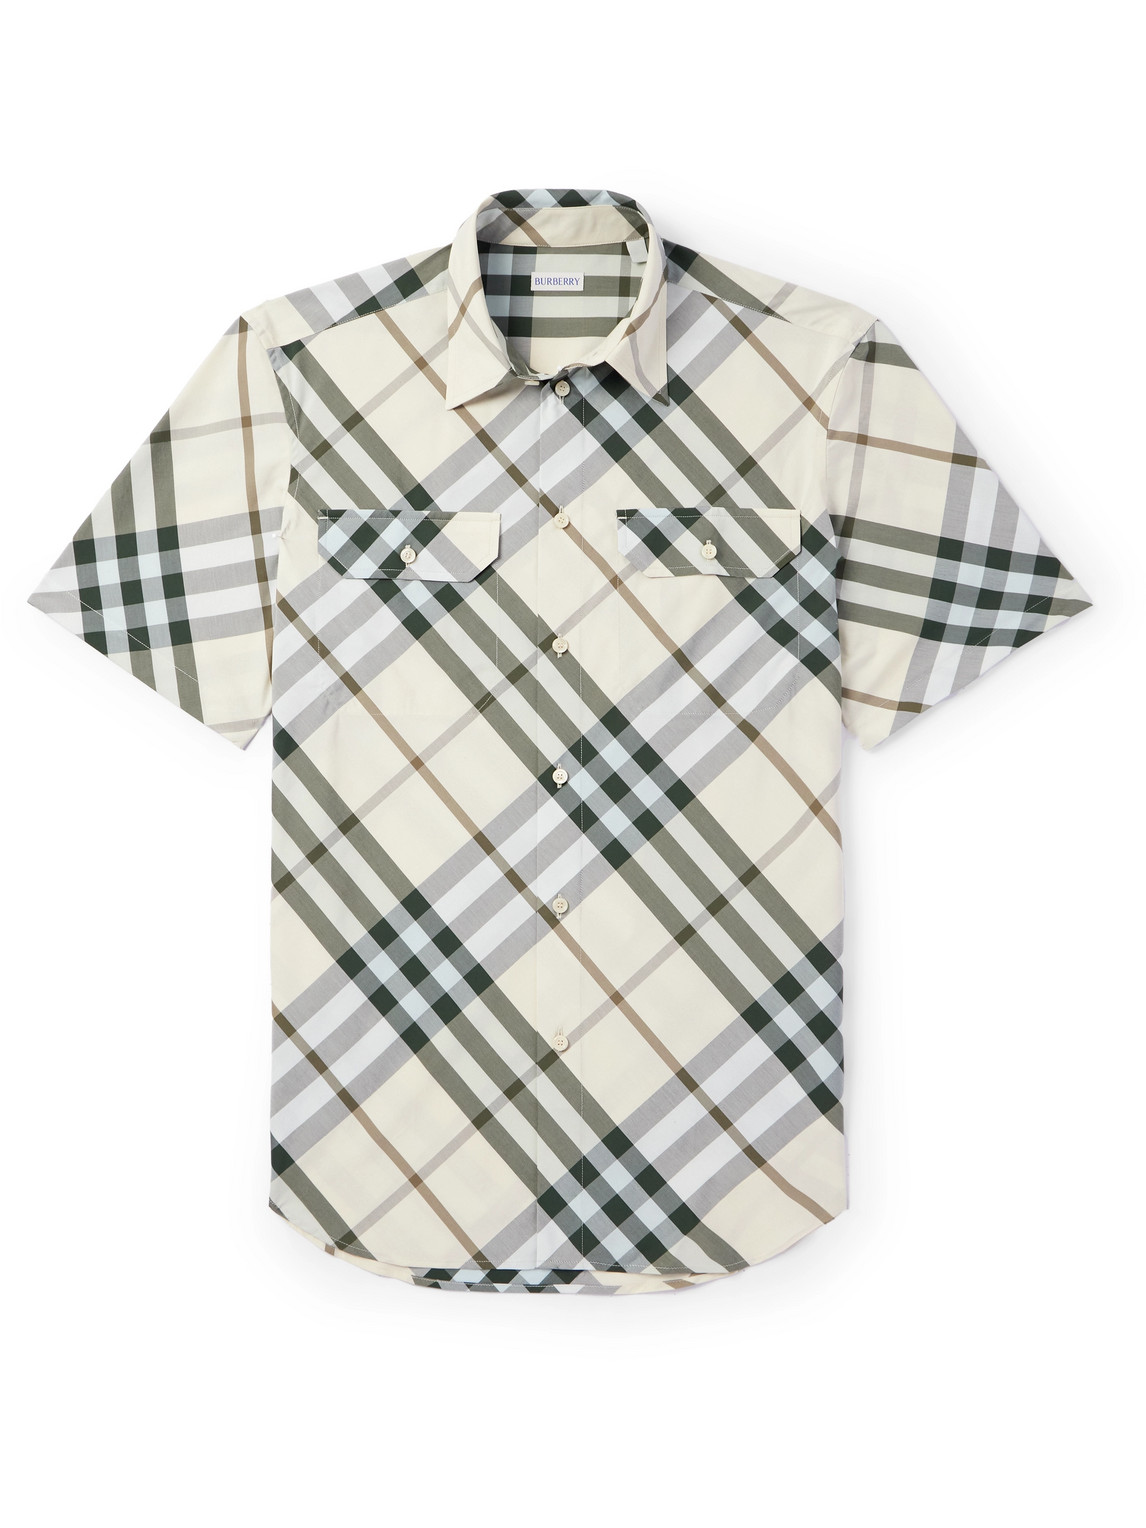 Burberry - Checked Cotton Shirt - Men - Neutrals - S von Burberry